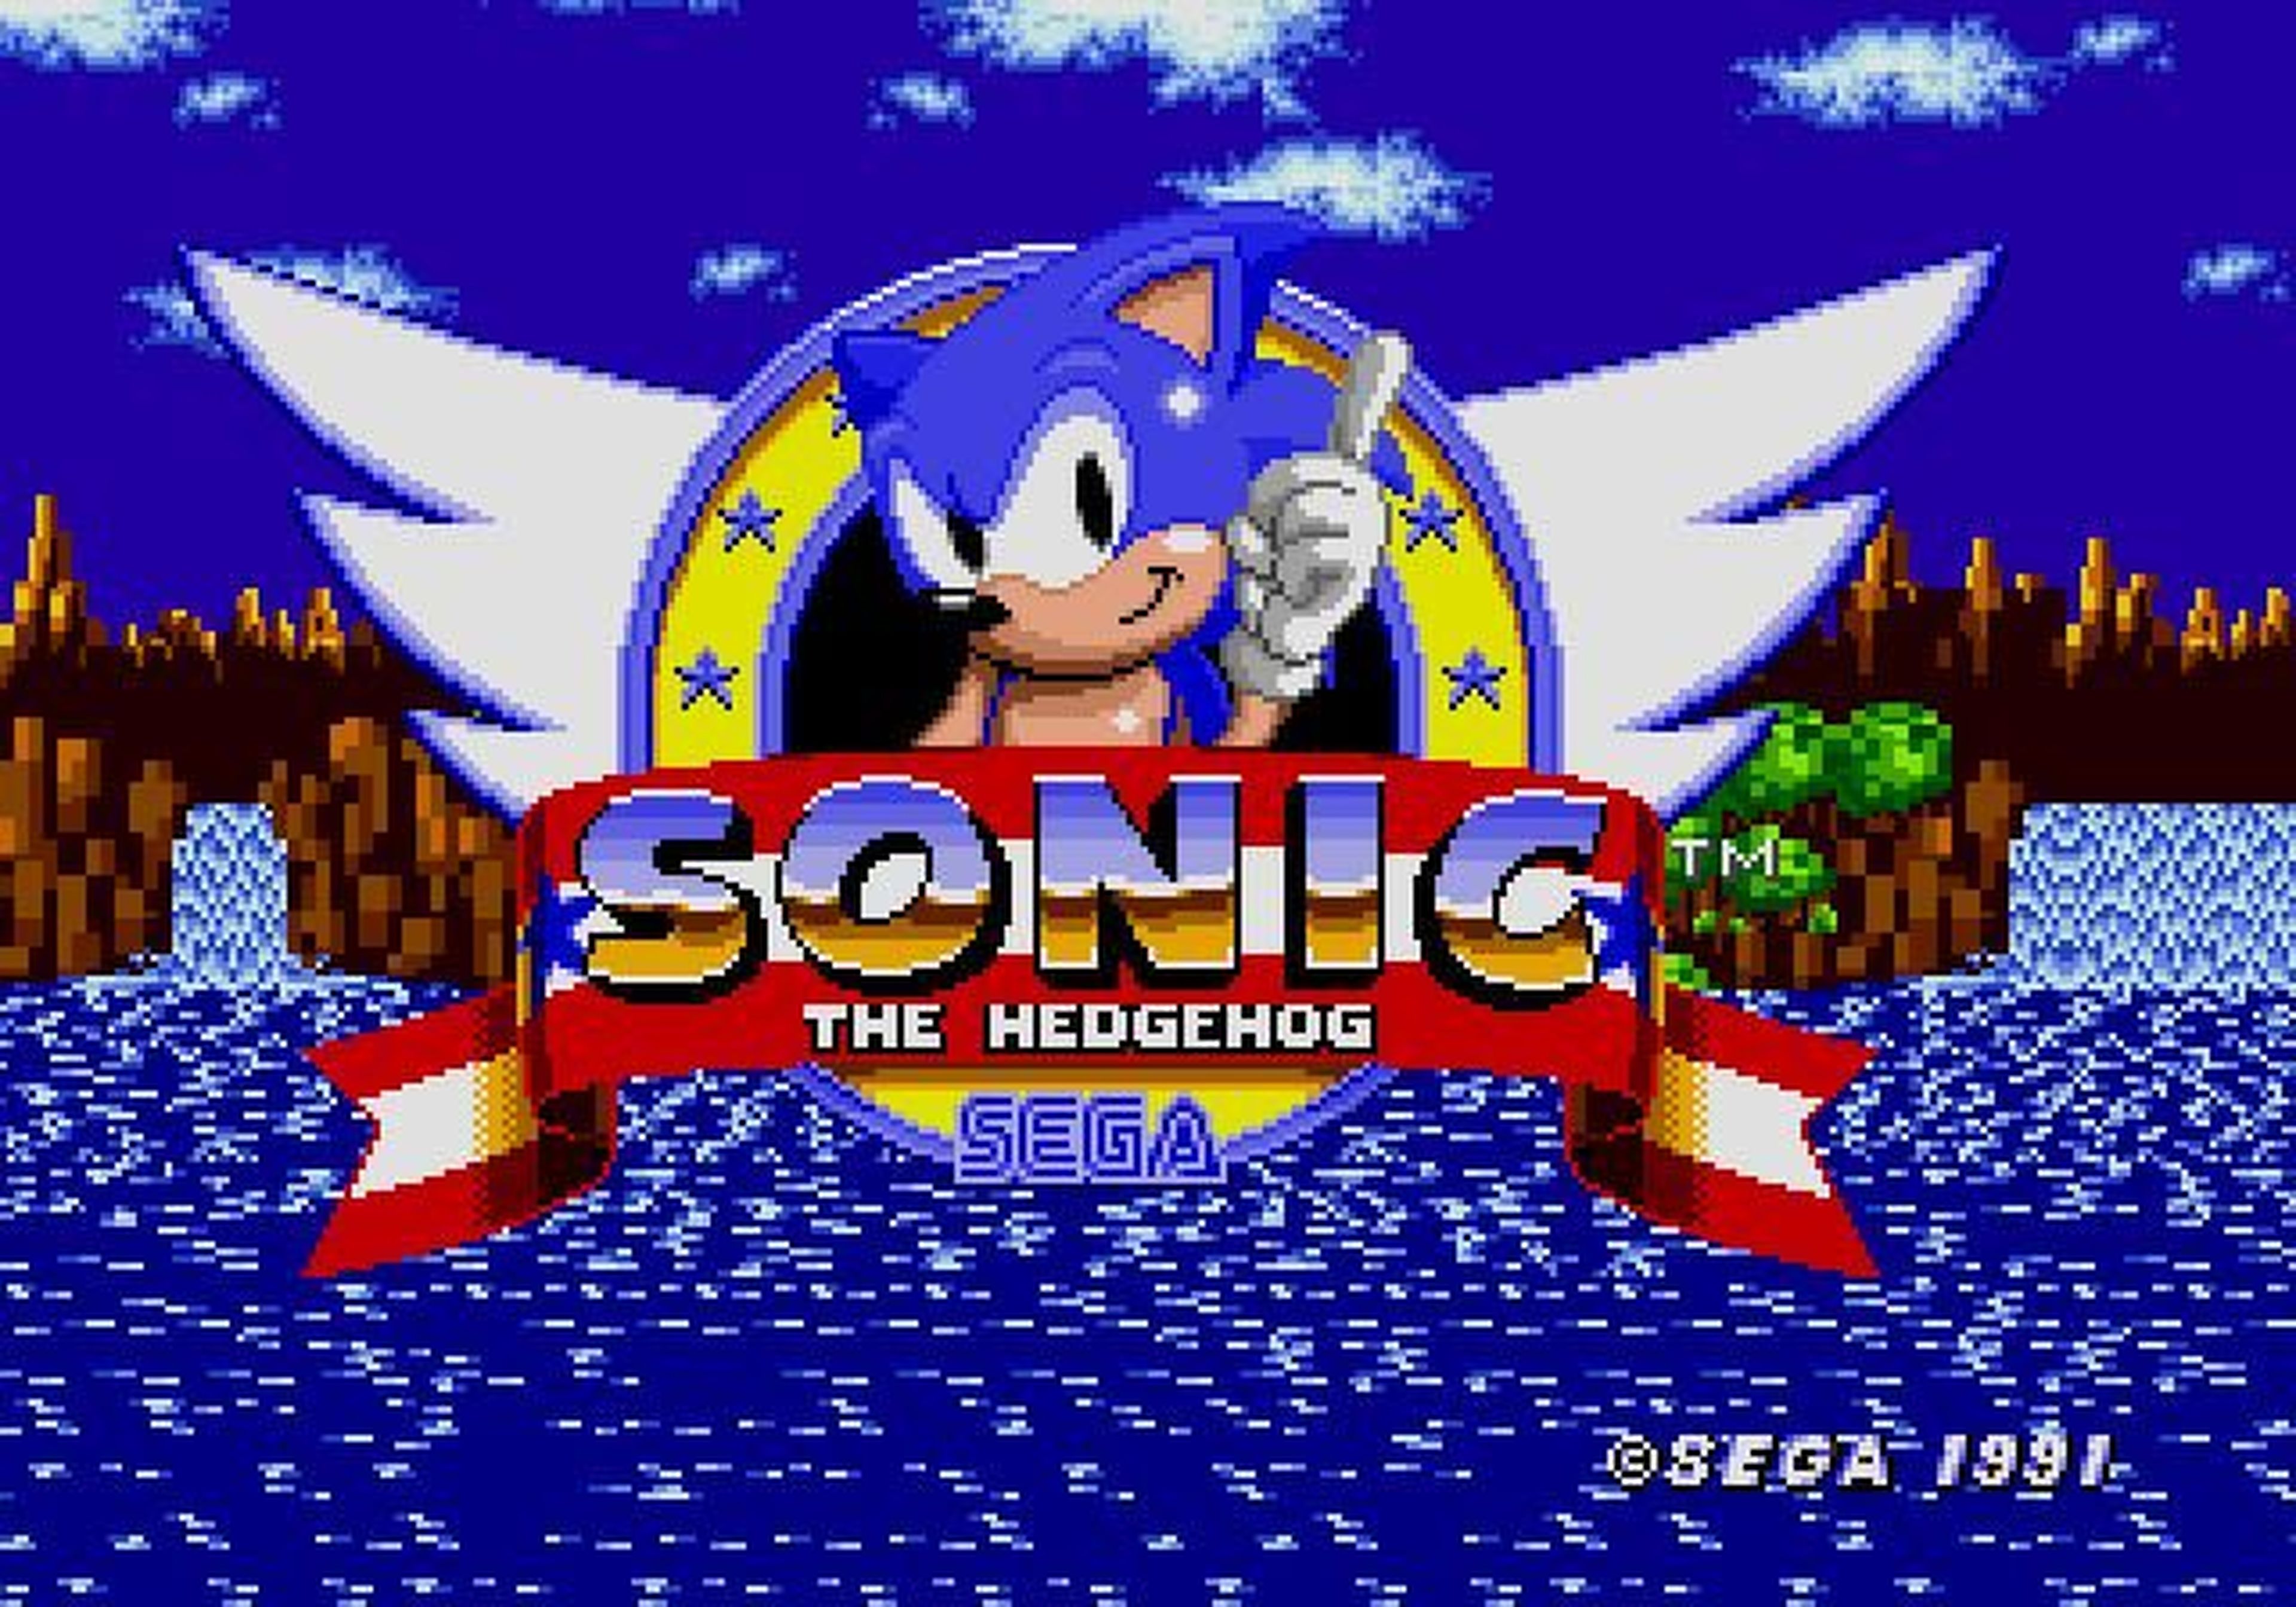 Un día como hoy, en 1991, llegó Sonic the Hedgehog